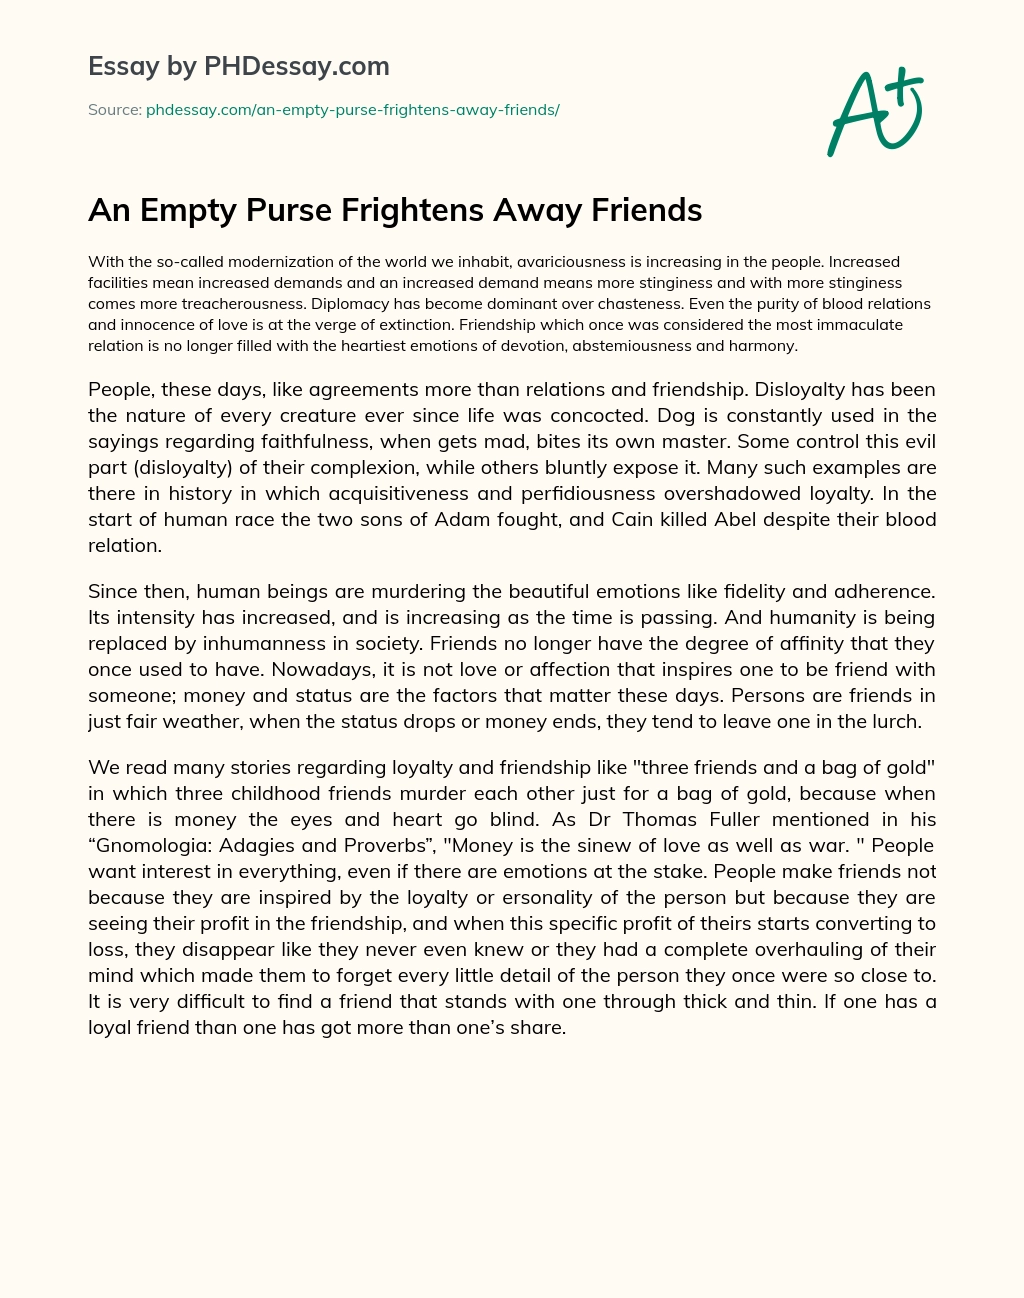 An Empty Purse Frightens Away Friends essay